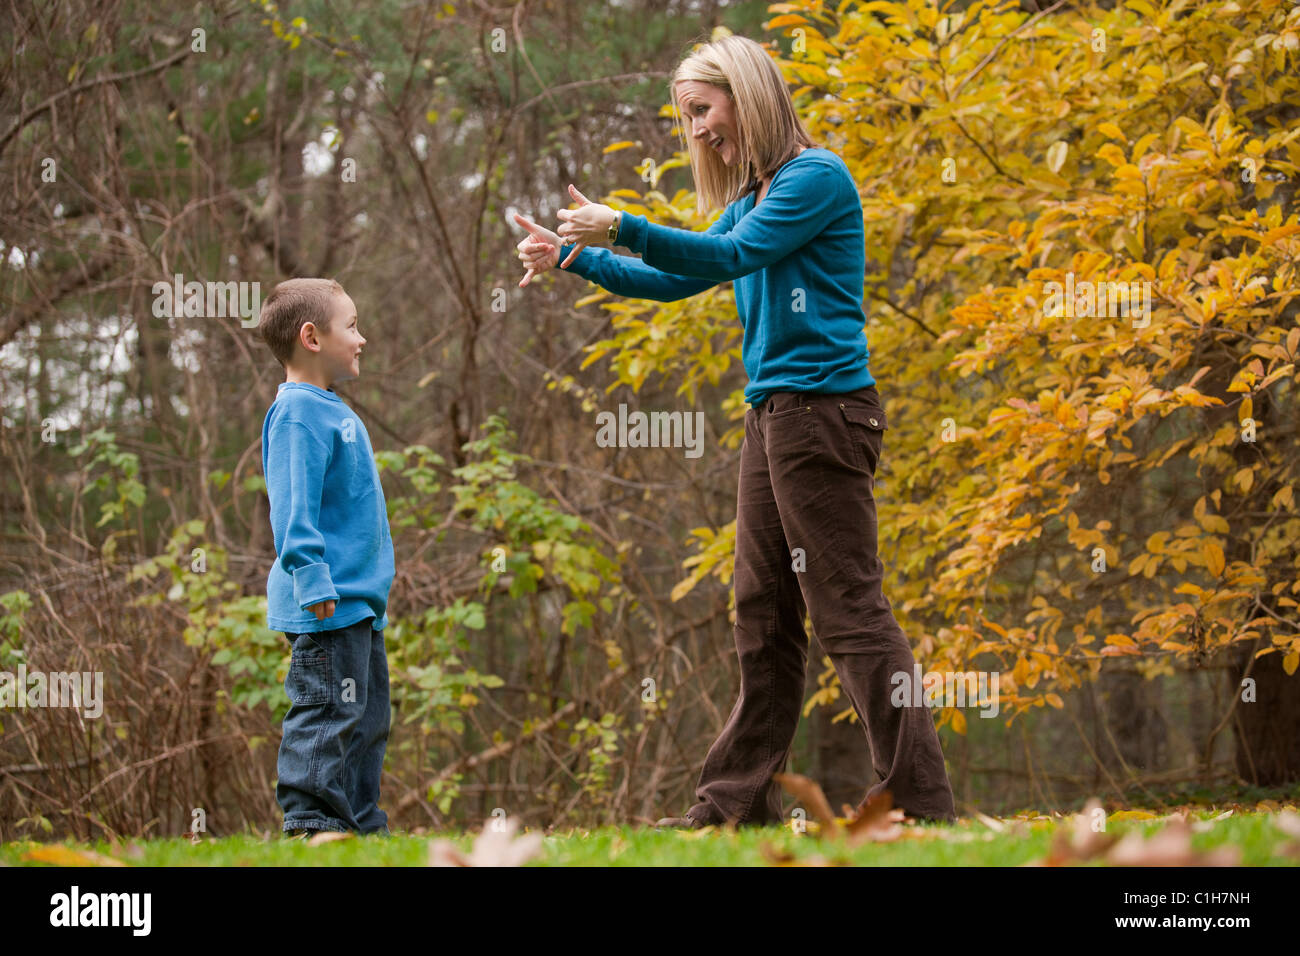 Frau, die das Wort "Play" in amerikanischer Gebärdensprache während der Kommunikation mit ihrem Sohn Unterzeichnung Stockfoto